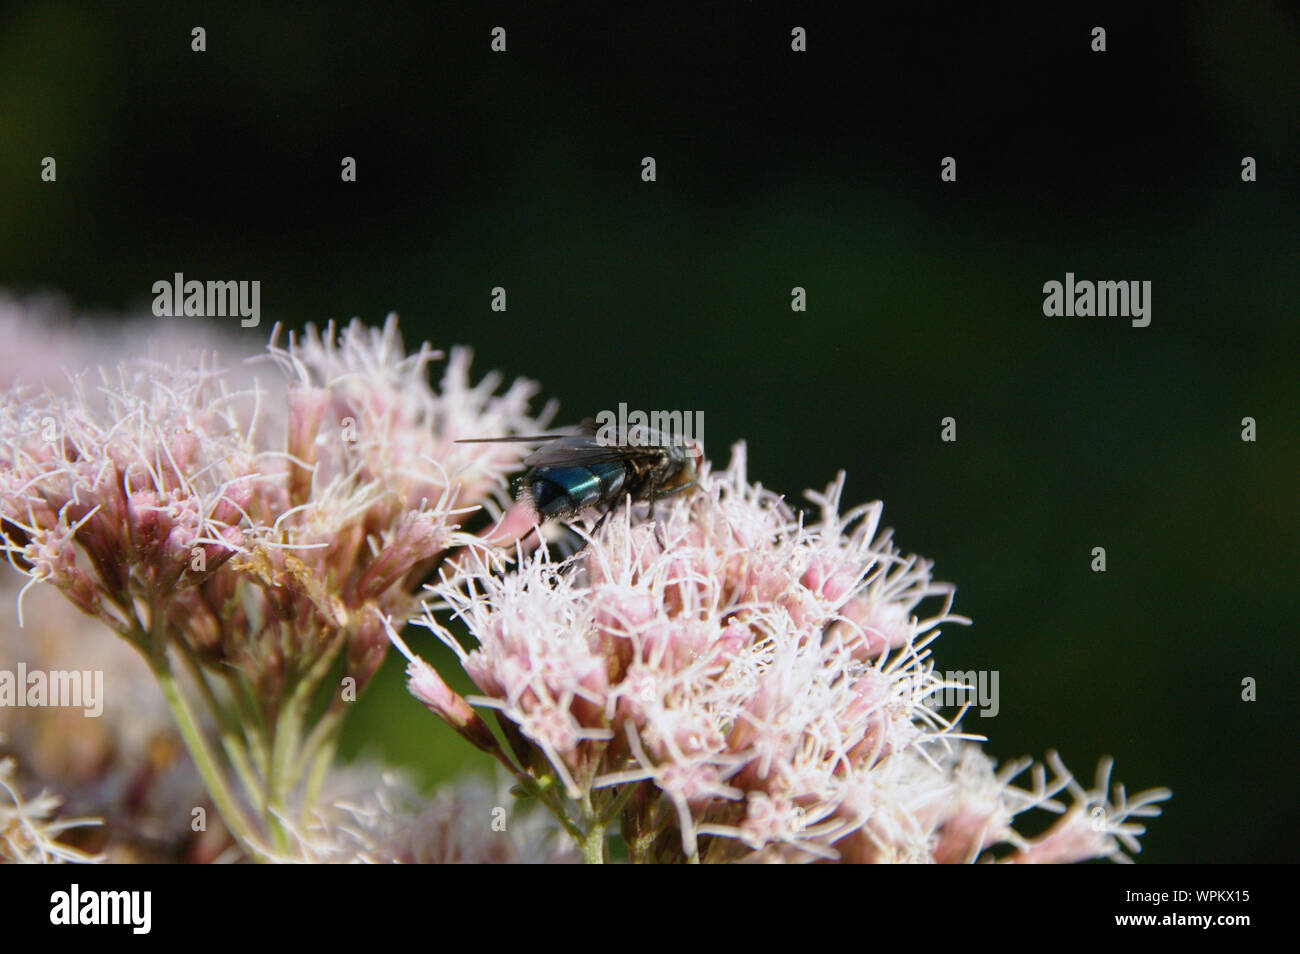 blowfly fly sitting on thoroughwort flowers blossoms/ Fliege sitzt auf Wasserdost Blüten Nahaufnahme Stock Photo